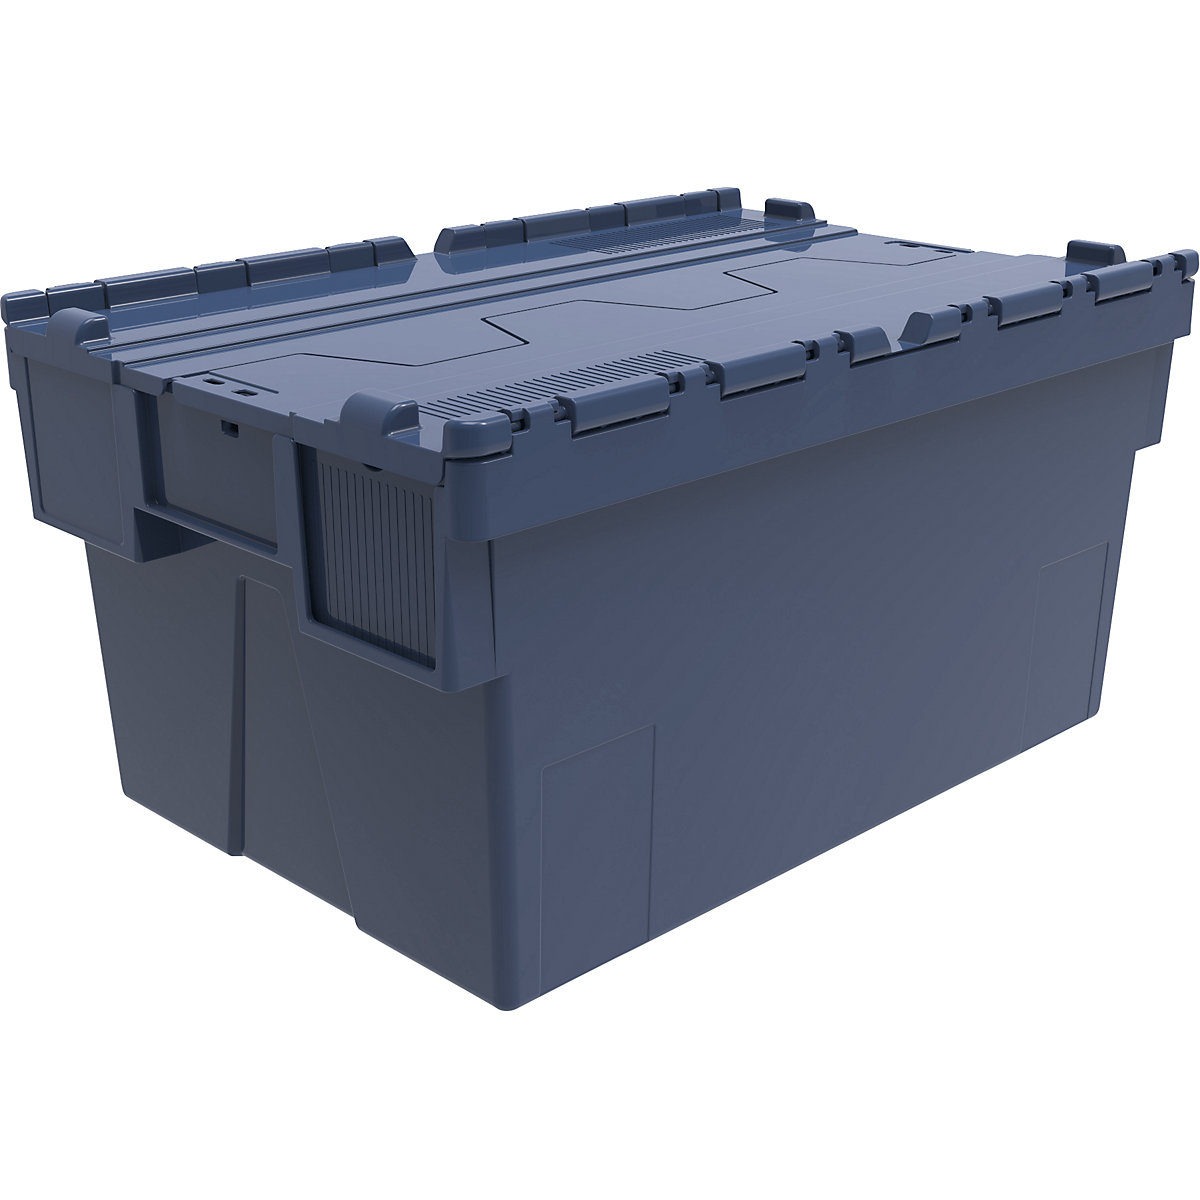 Recipiente empilhável e retornável, CxLxA 600 x 400 x 310 mm, embalagem de 5 unid., azul, tampa azul